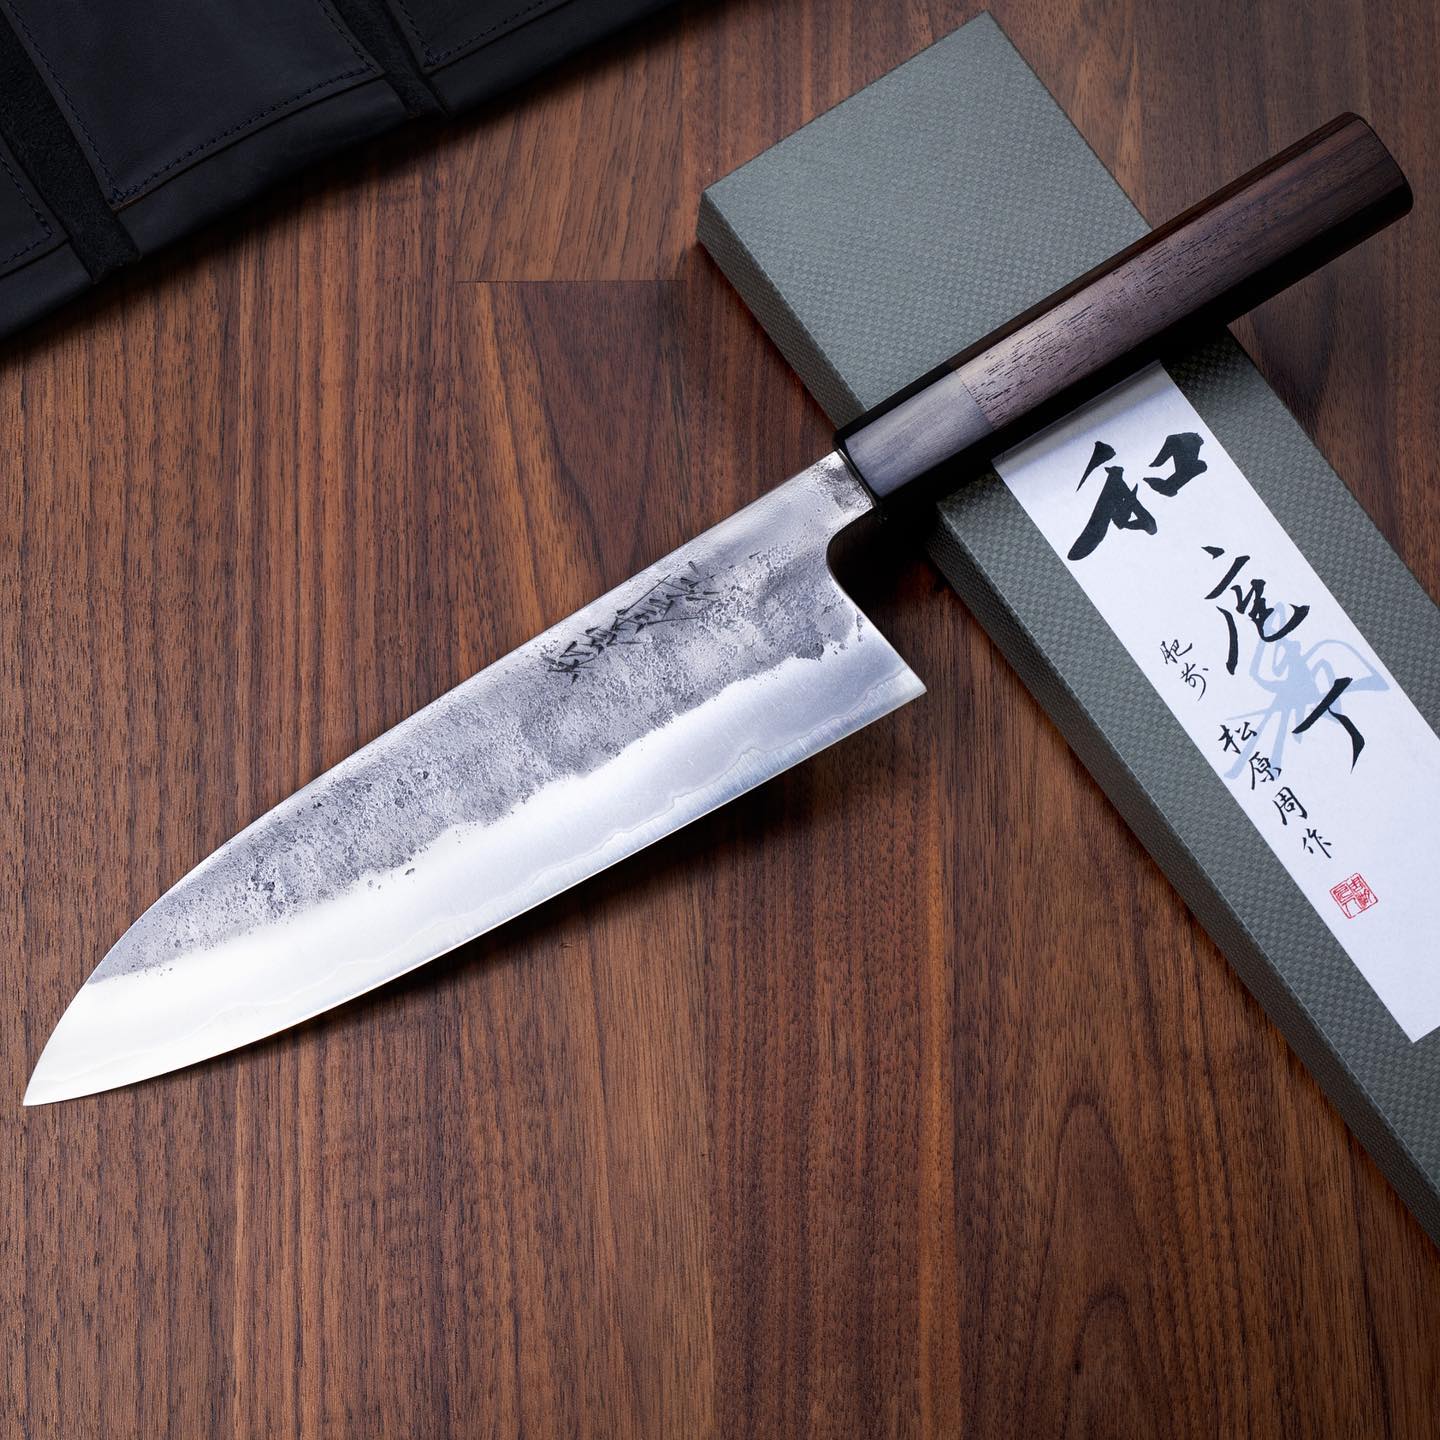 Kosten Digitaal holte Waarom een Japans mes 'het beste mes' is voor een kok